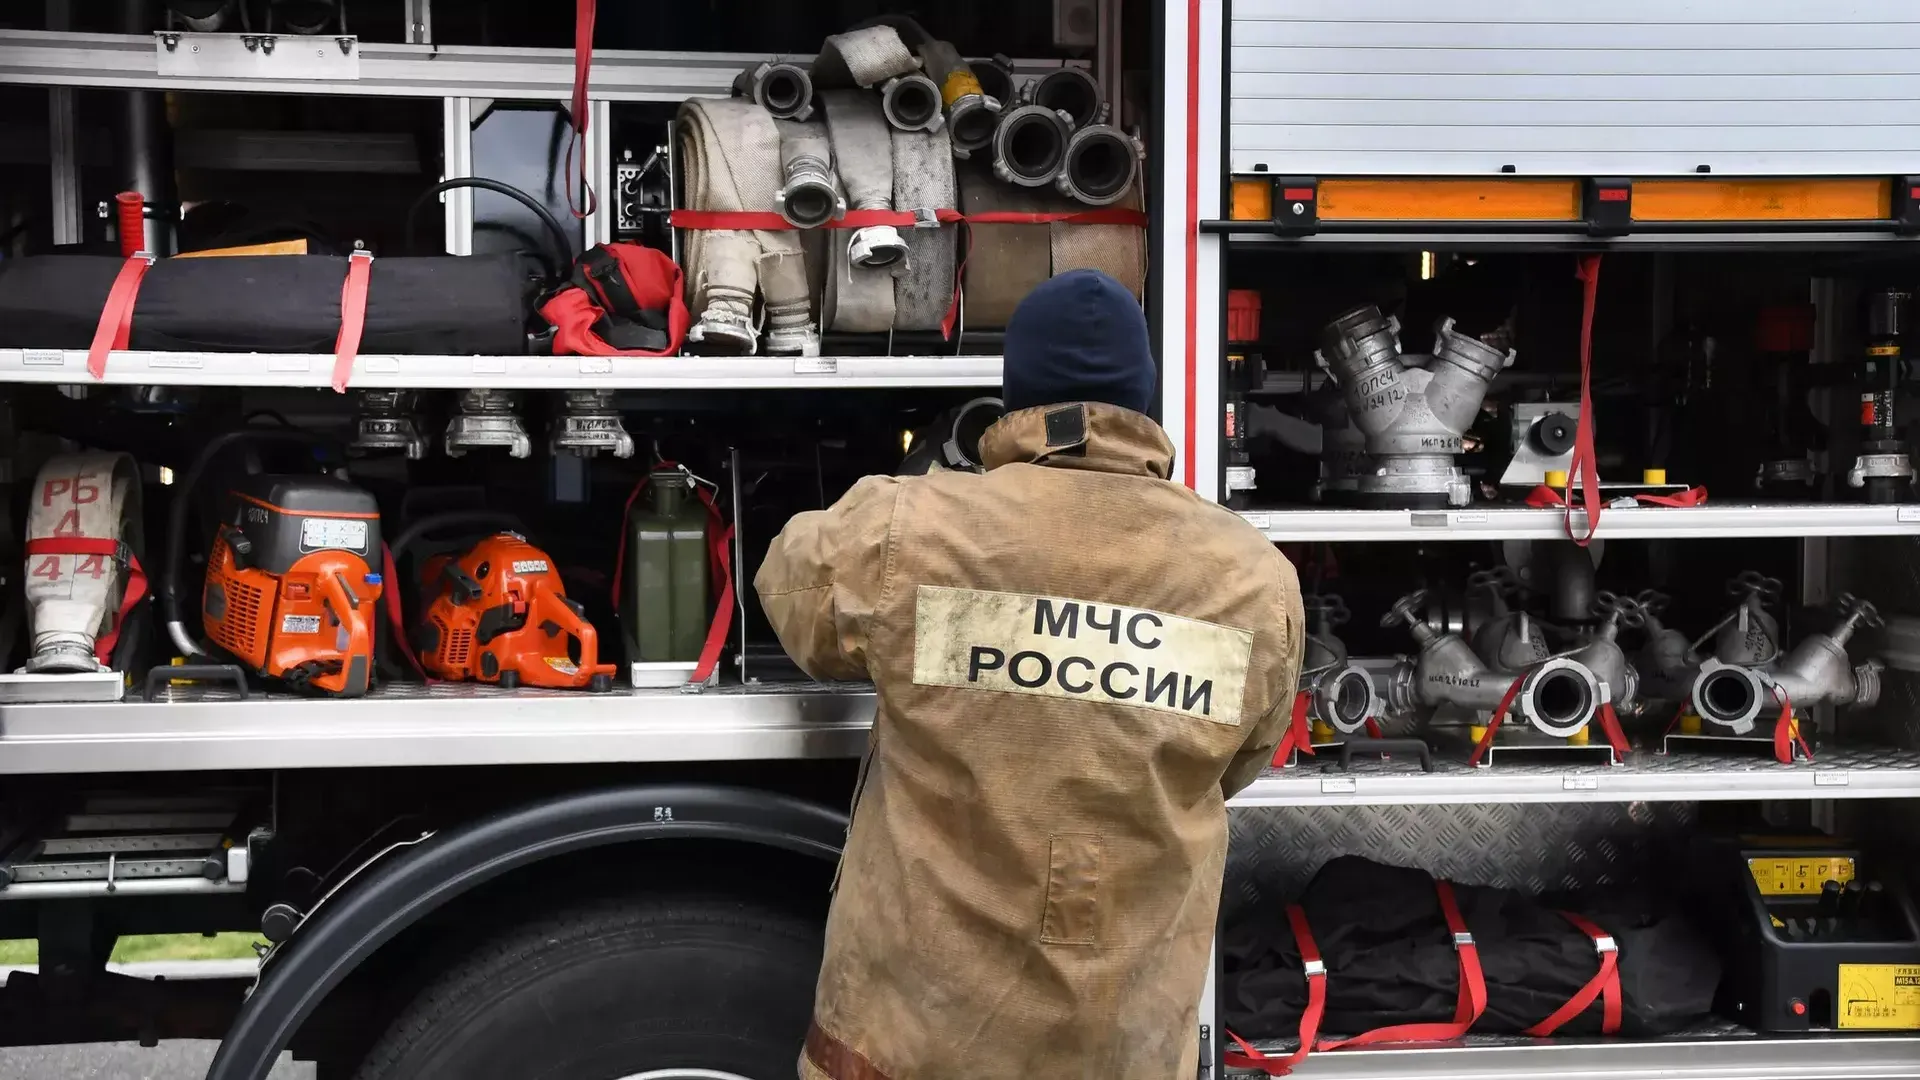 Пожар в торговом комплексе на Ставрополье локализован — МЧС